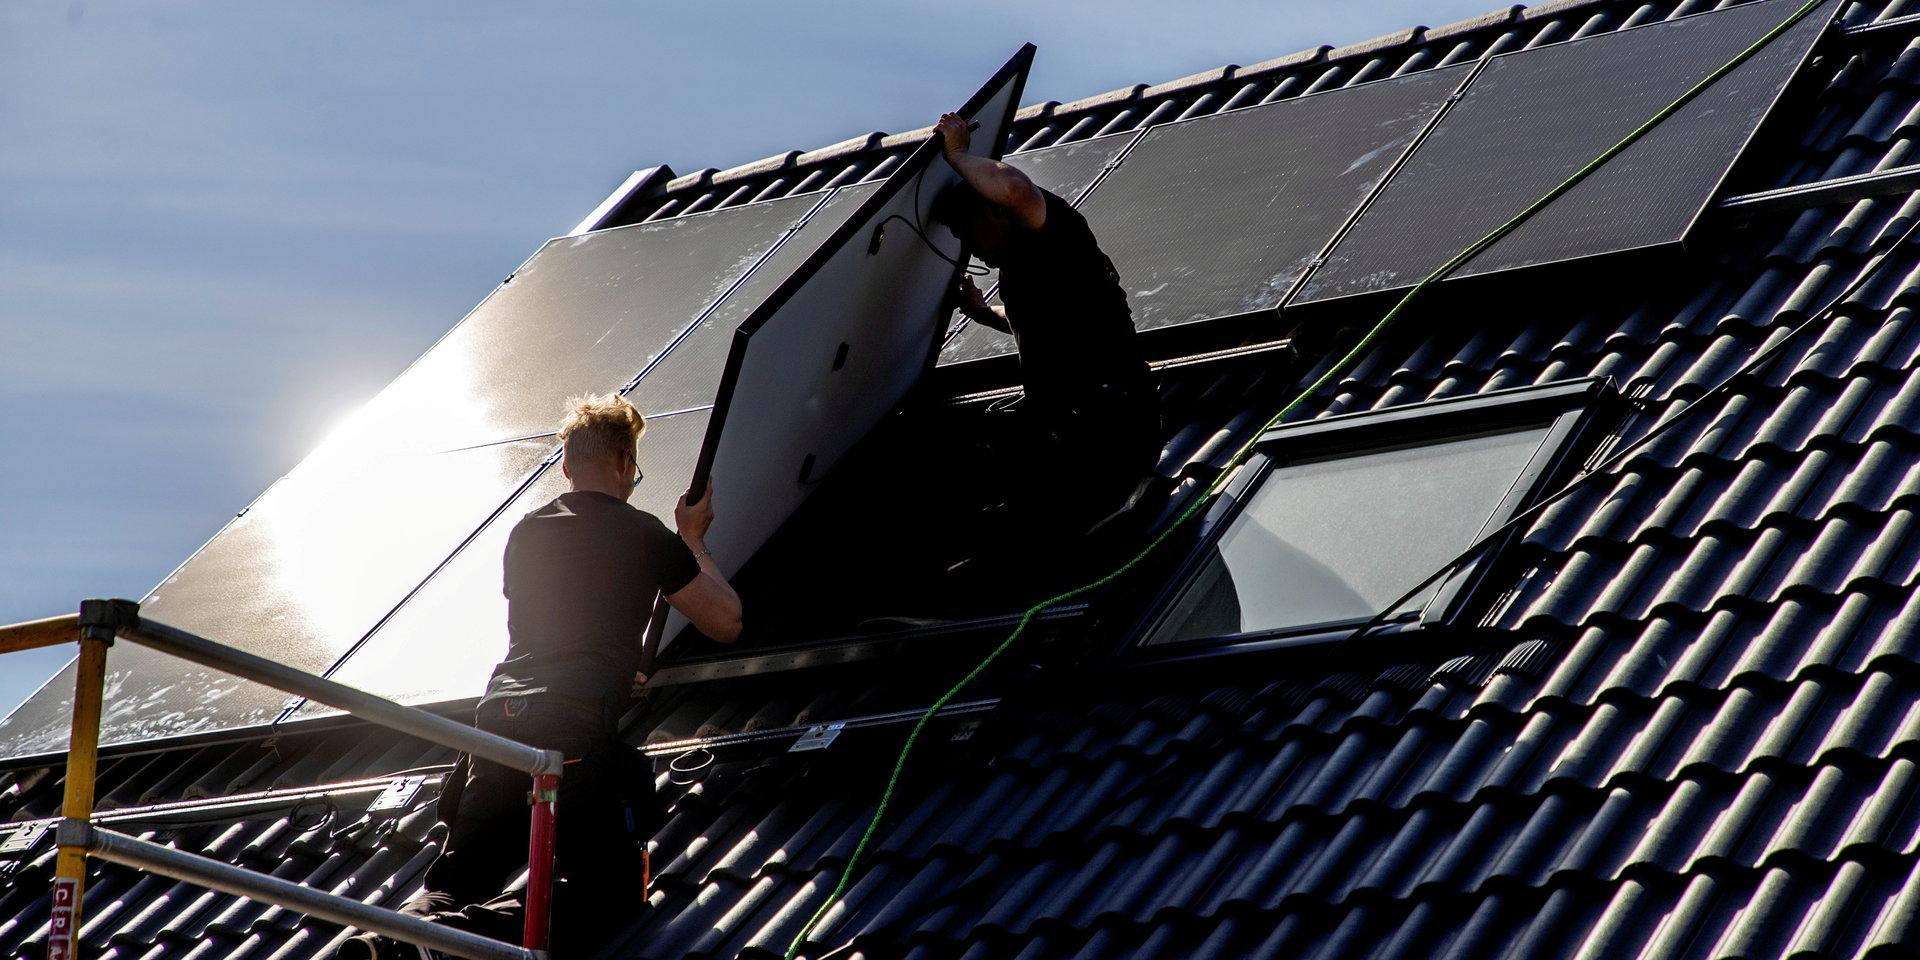 De som installerar solceller ska känna sig trygga och att deras installationer är godkända. I Halmstad ska det vara lätt att göra rätt, skriver tre företrädare för Halmstads Lokala Parti.